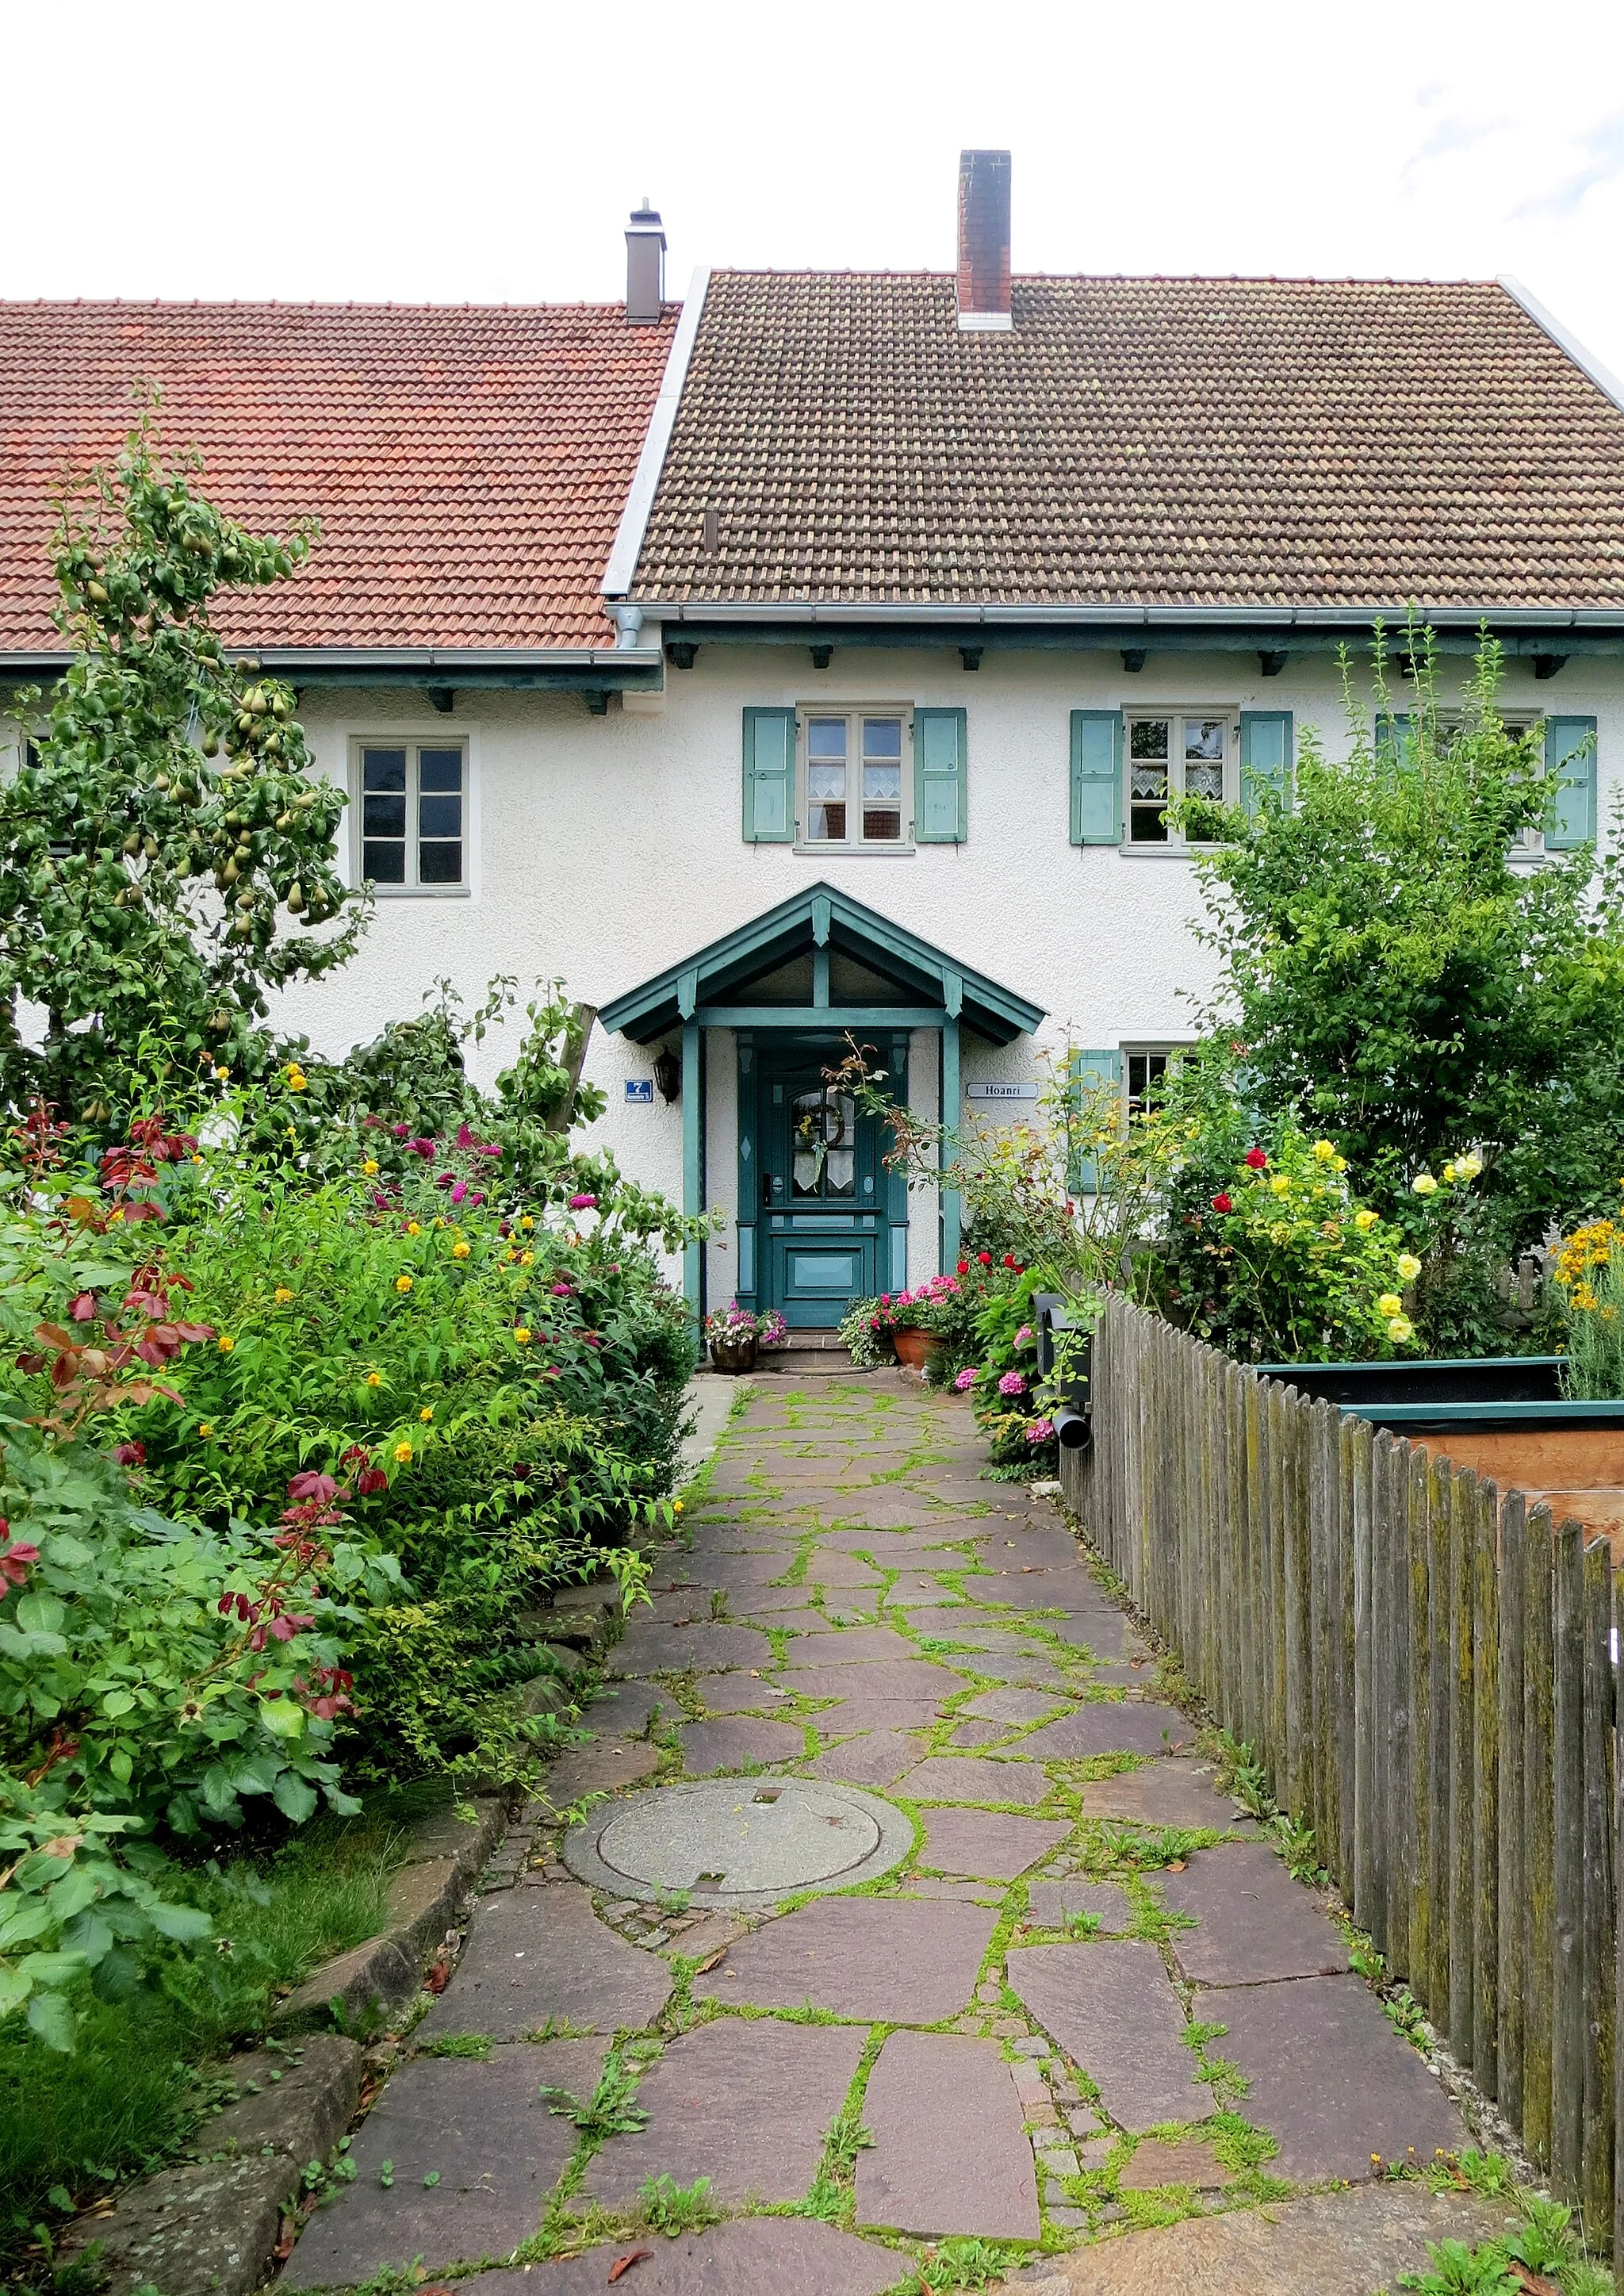 Photo showing: Ehemaliges Bauernhaus Mammendorfer Straße 7 in Jesenwang - Zugangsweg mit Vorgarten und Türe